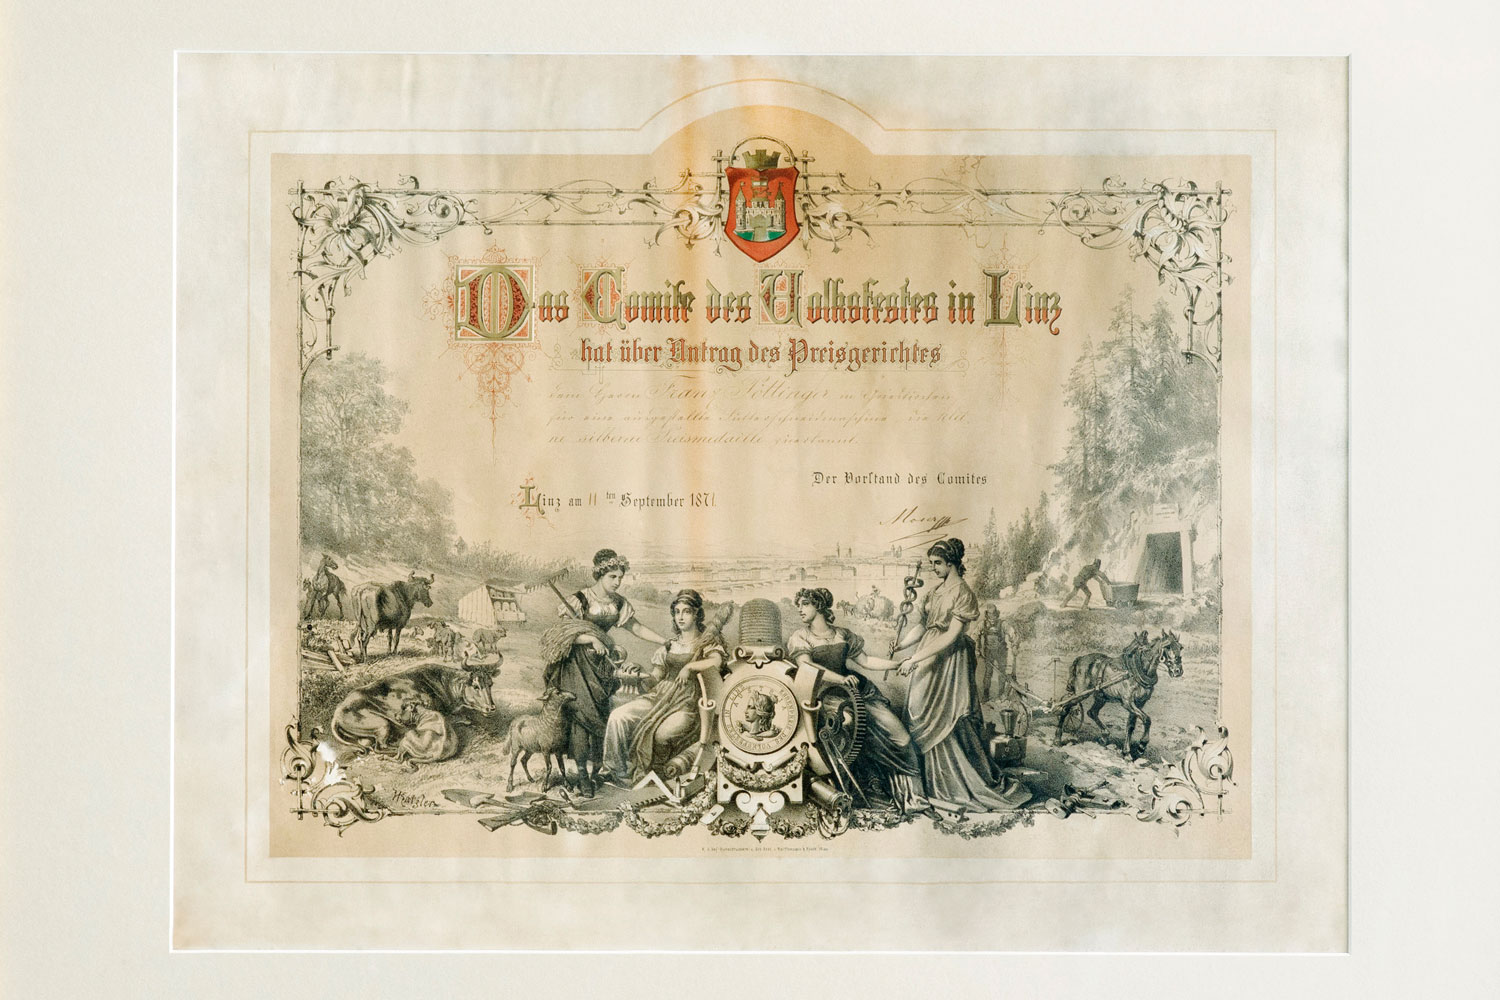 „Výbor lidové slavnosti v Linci udělil na žádost poroty panu Franzi Pöttingerovi v Grieskirchenu za jeho vystavenou řezačku pícnin malou stříbrnou medaili. V Linci dne 11. září 1871.“